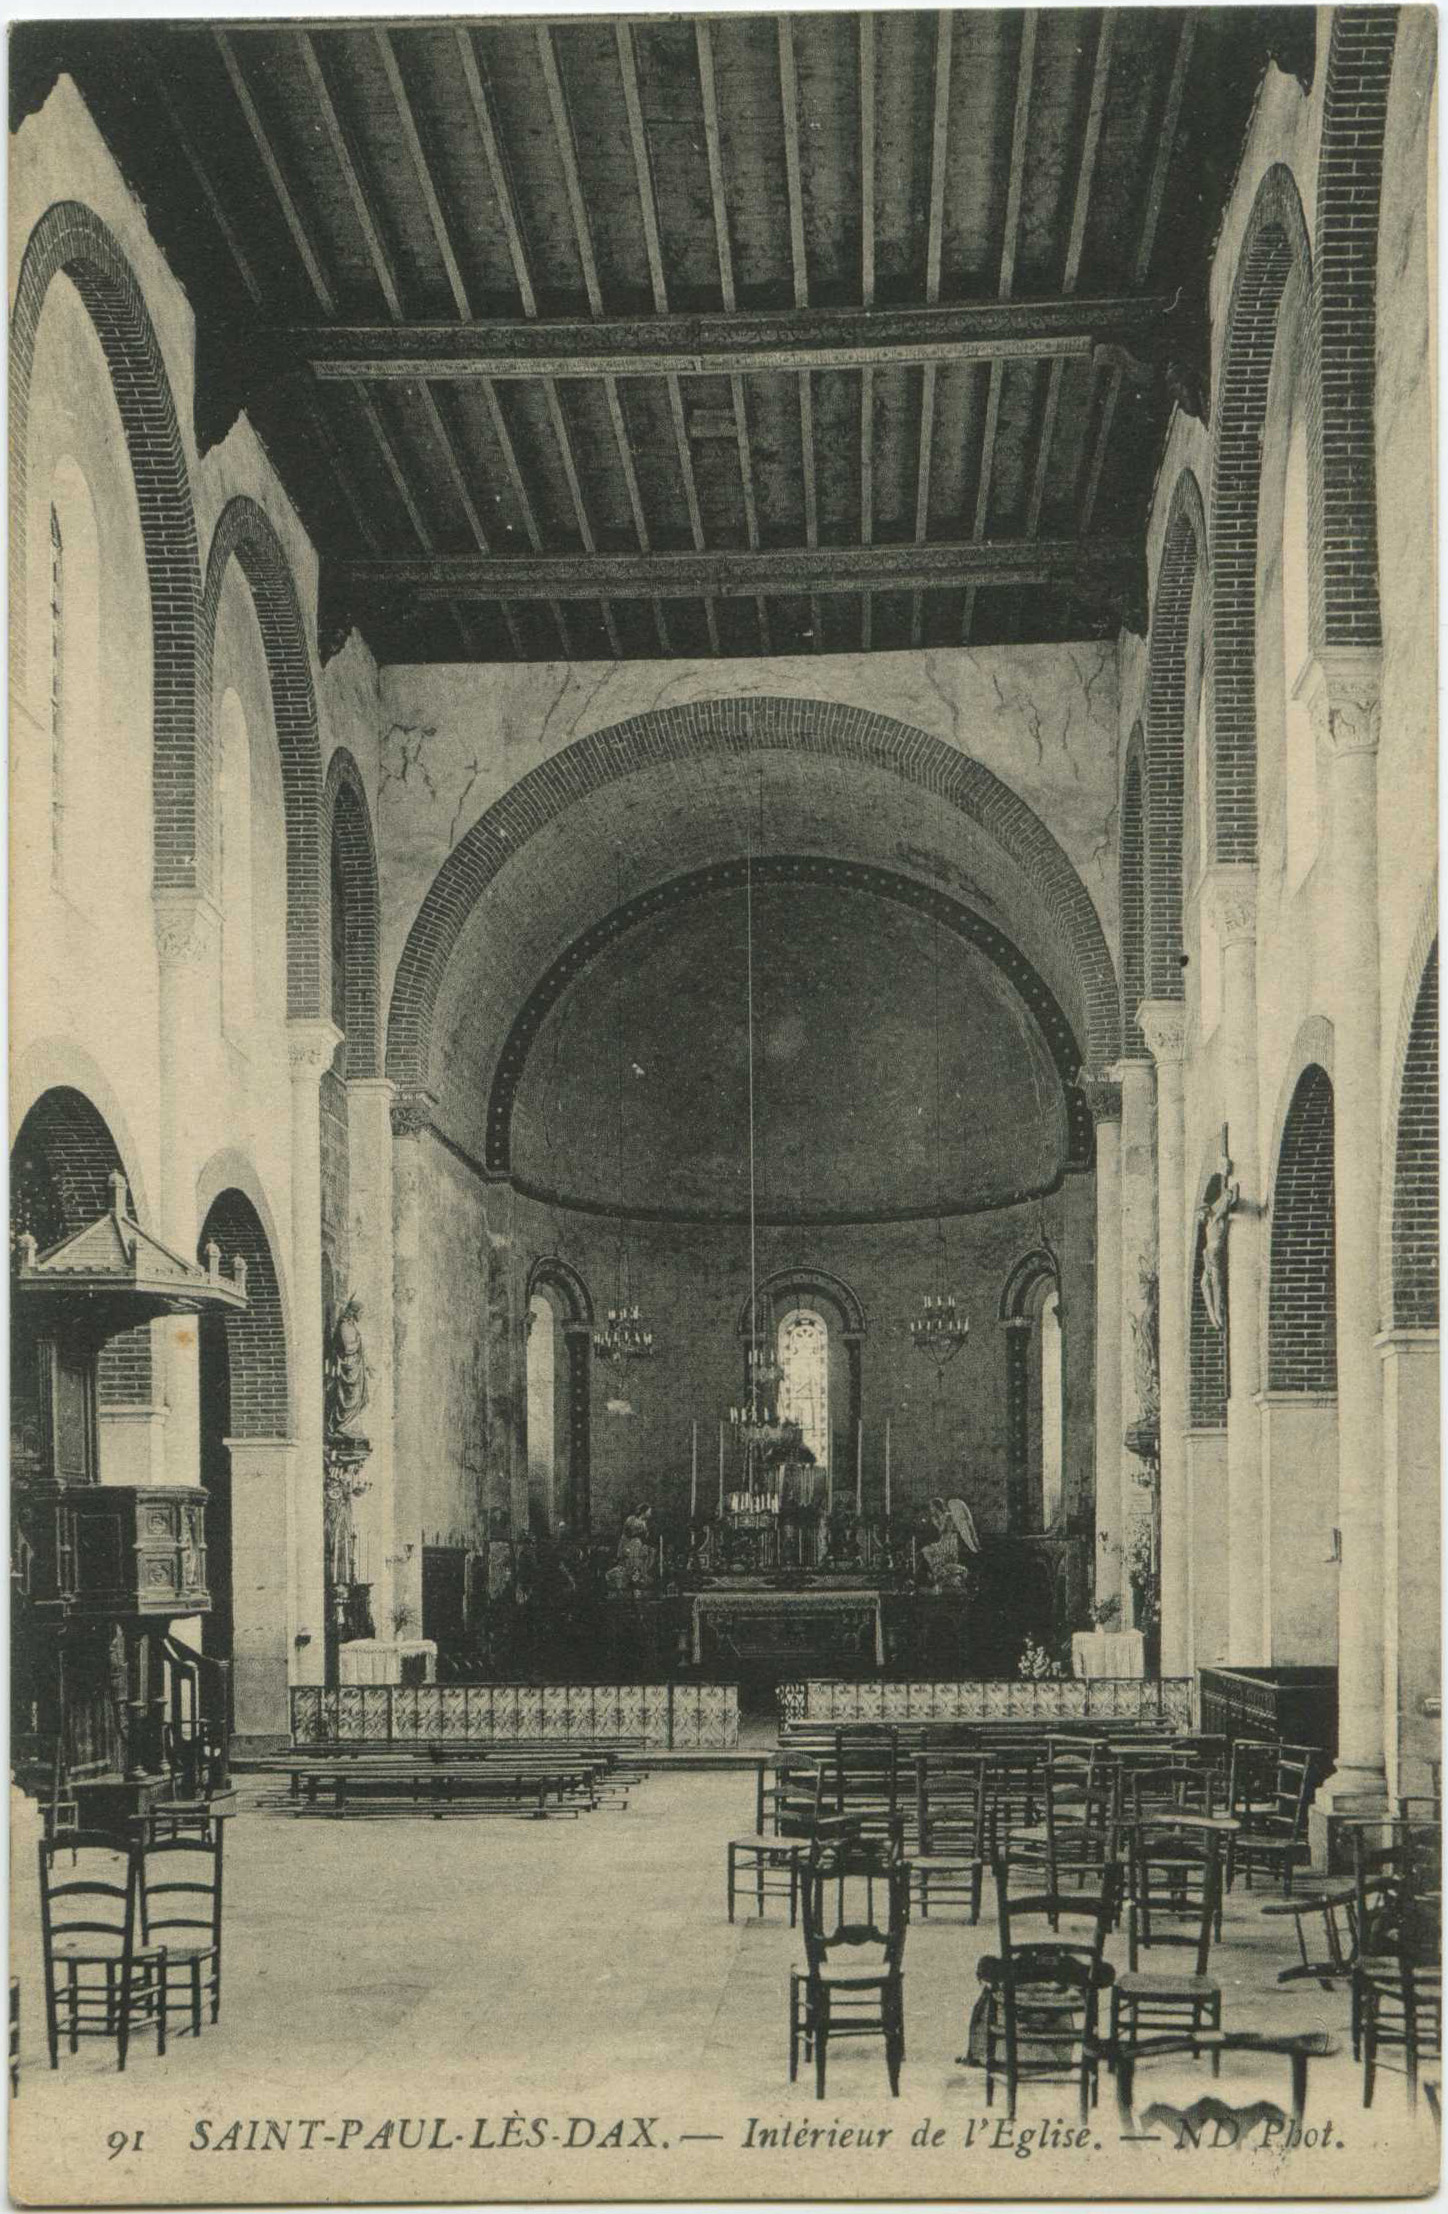 Saint-Paul-lès-Dax - Intérieur de l'Eglise